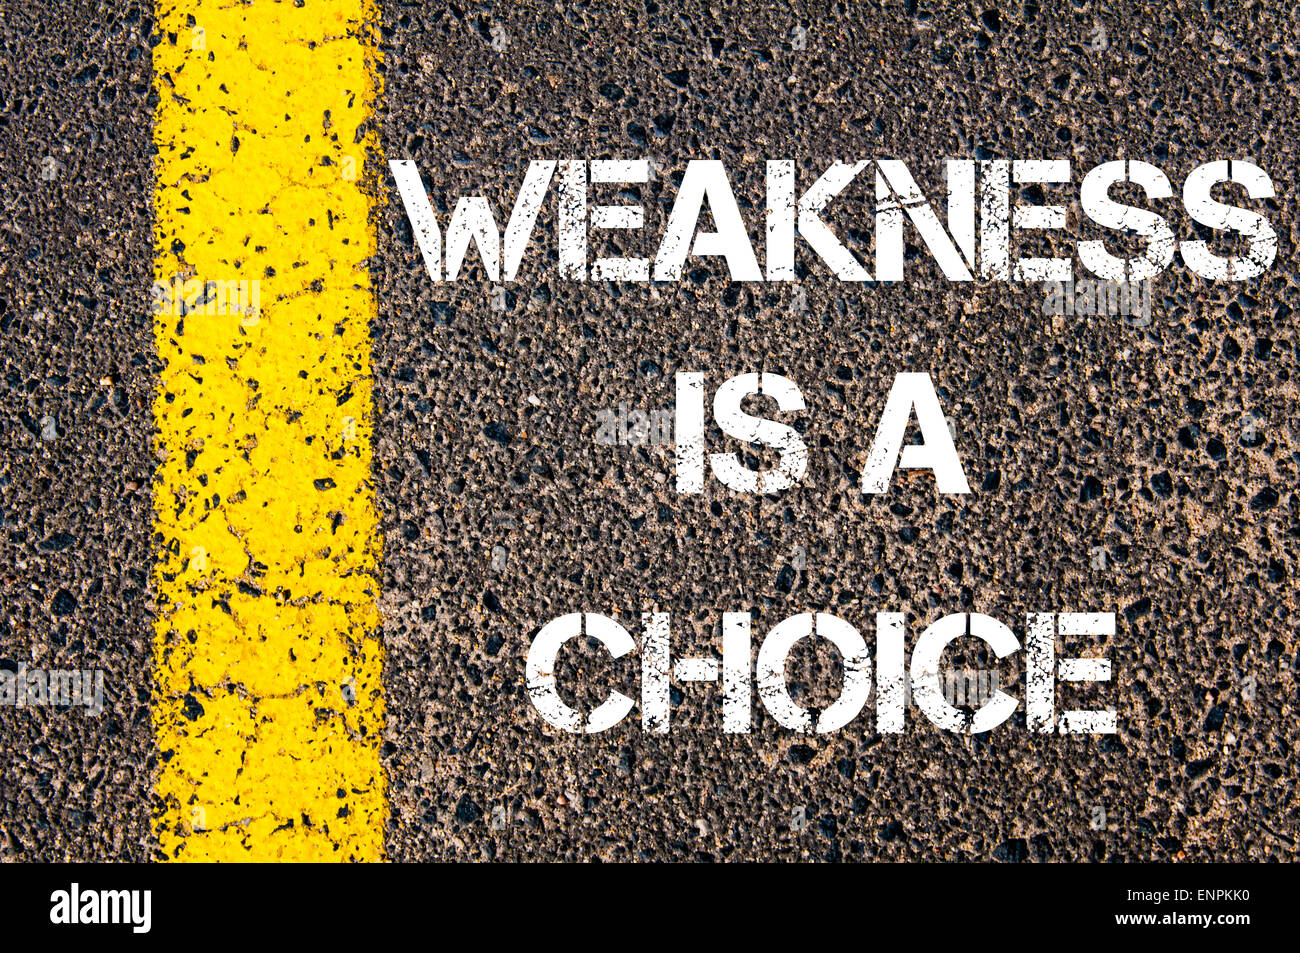 Schwäche ist ein Wahl-Motivations-Zitat. Gelbe Farbenlinie auf der Straße gegen Asphalt Hintergrund. Konzept-Bild Stockfoto